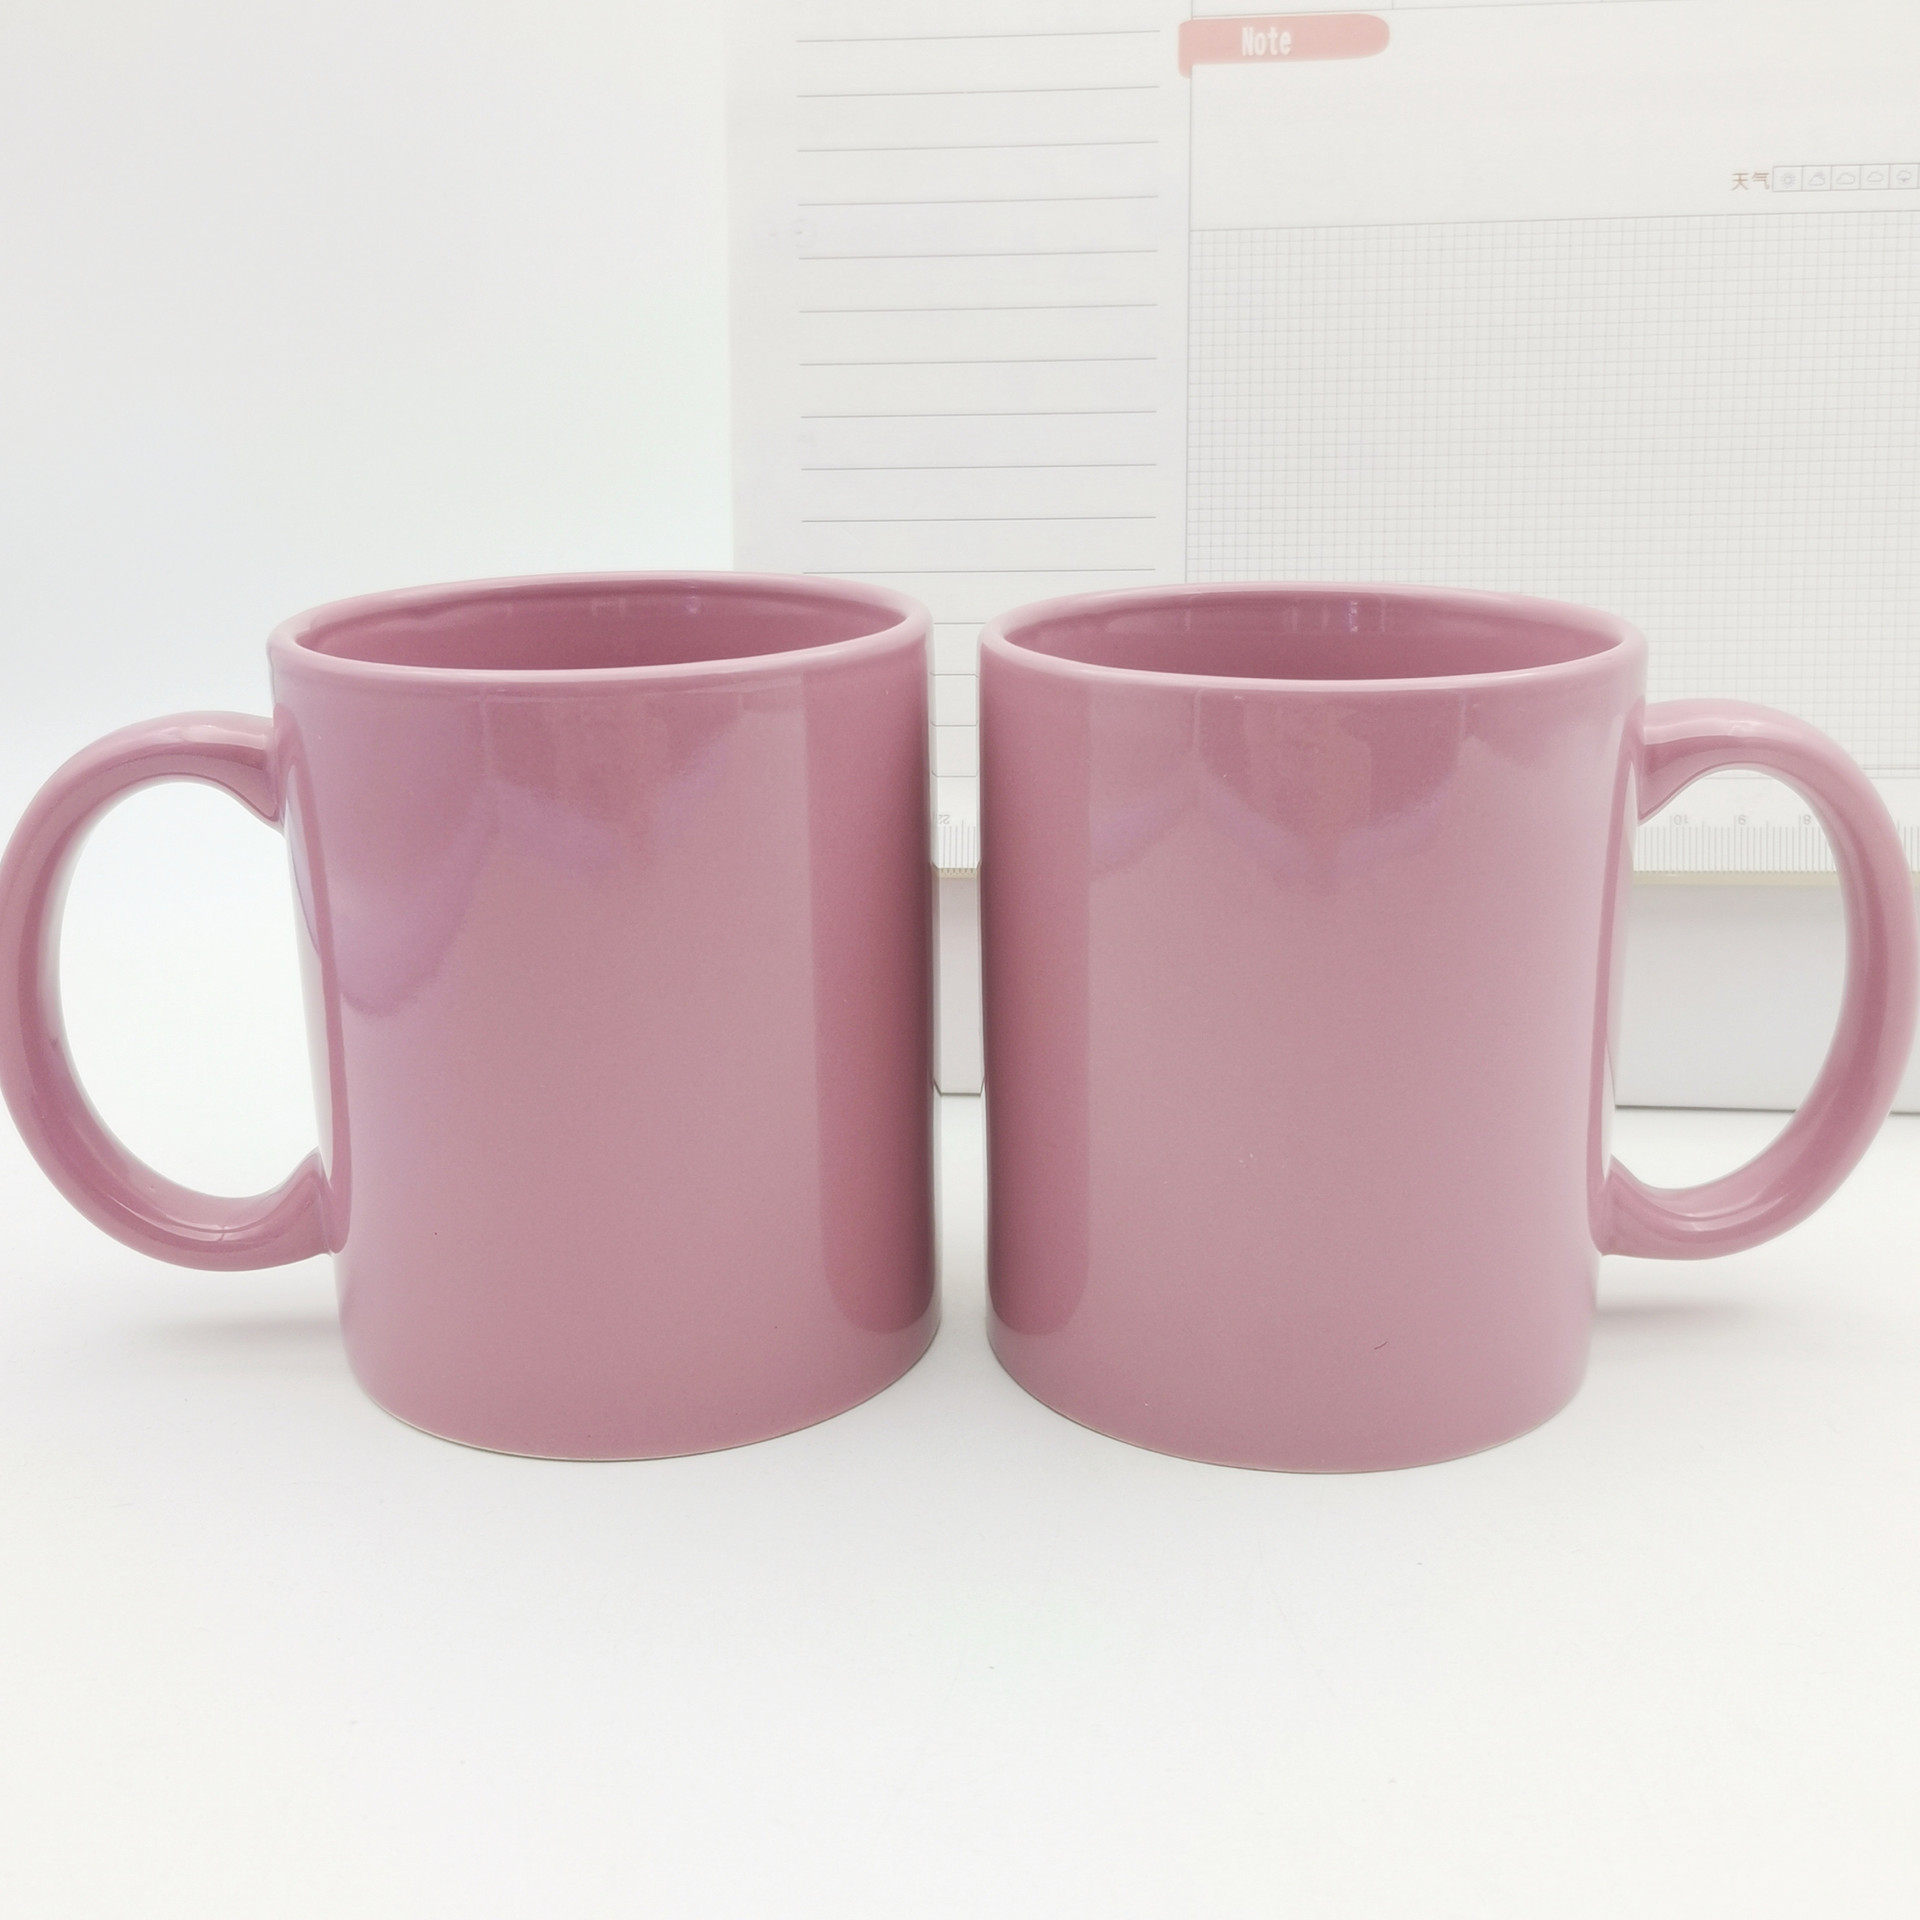 粉色陶瓷杯活动可爱广告水杯简约图案马克杯礼品外贸企业logo杯子